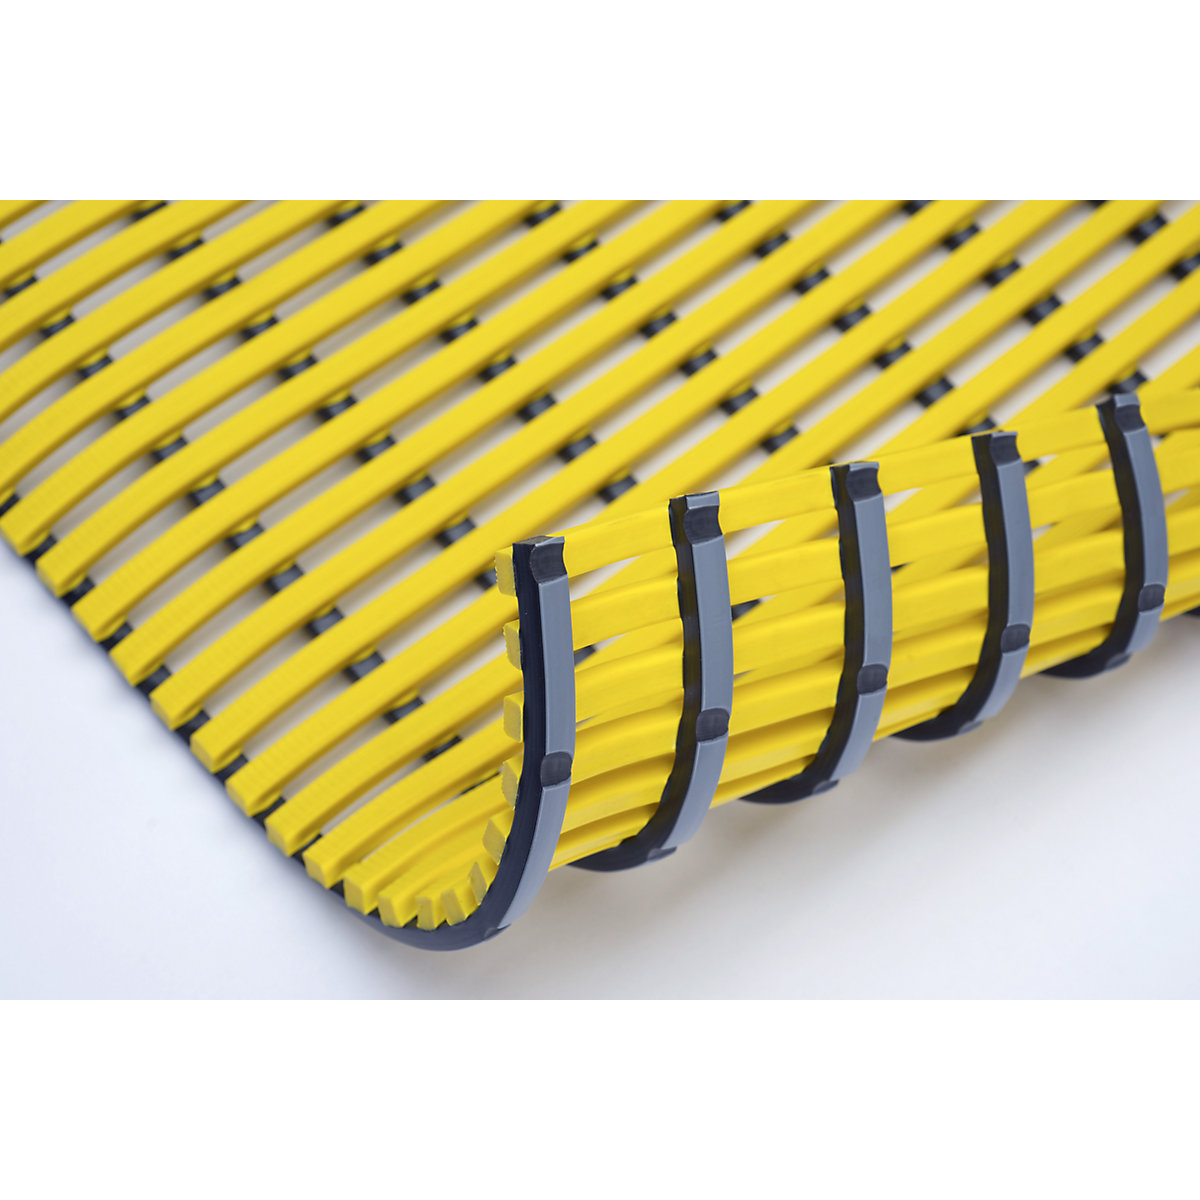 Wet room mat, anti-bacterial, per metre, yellow, width 600 mm